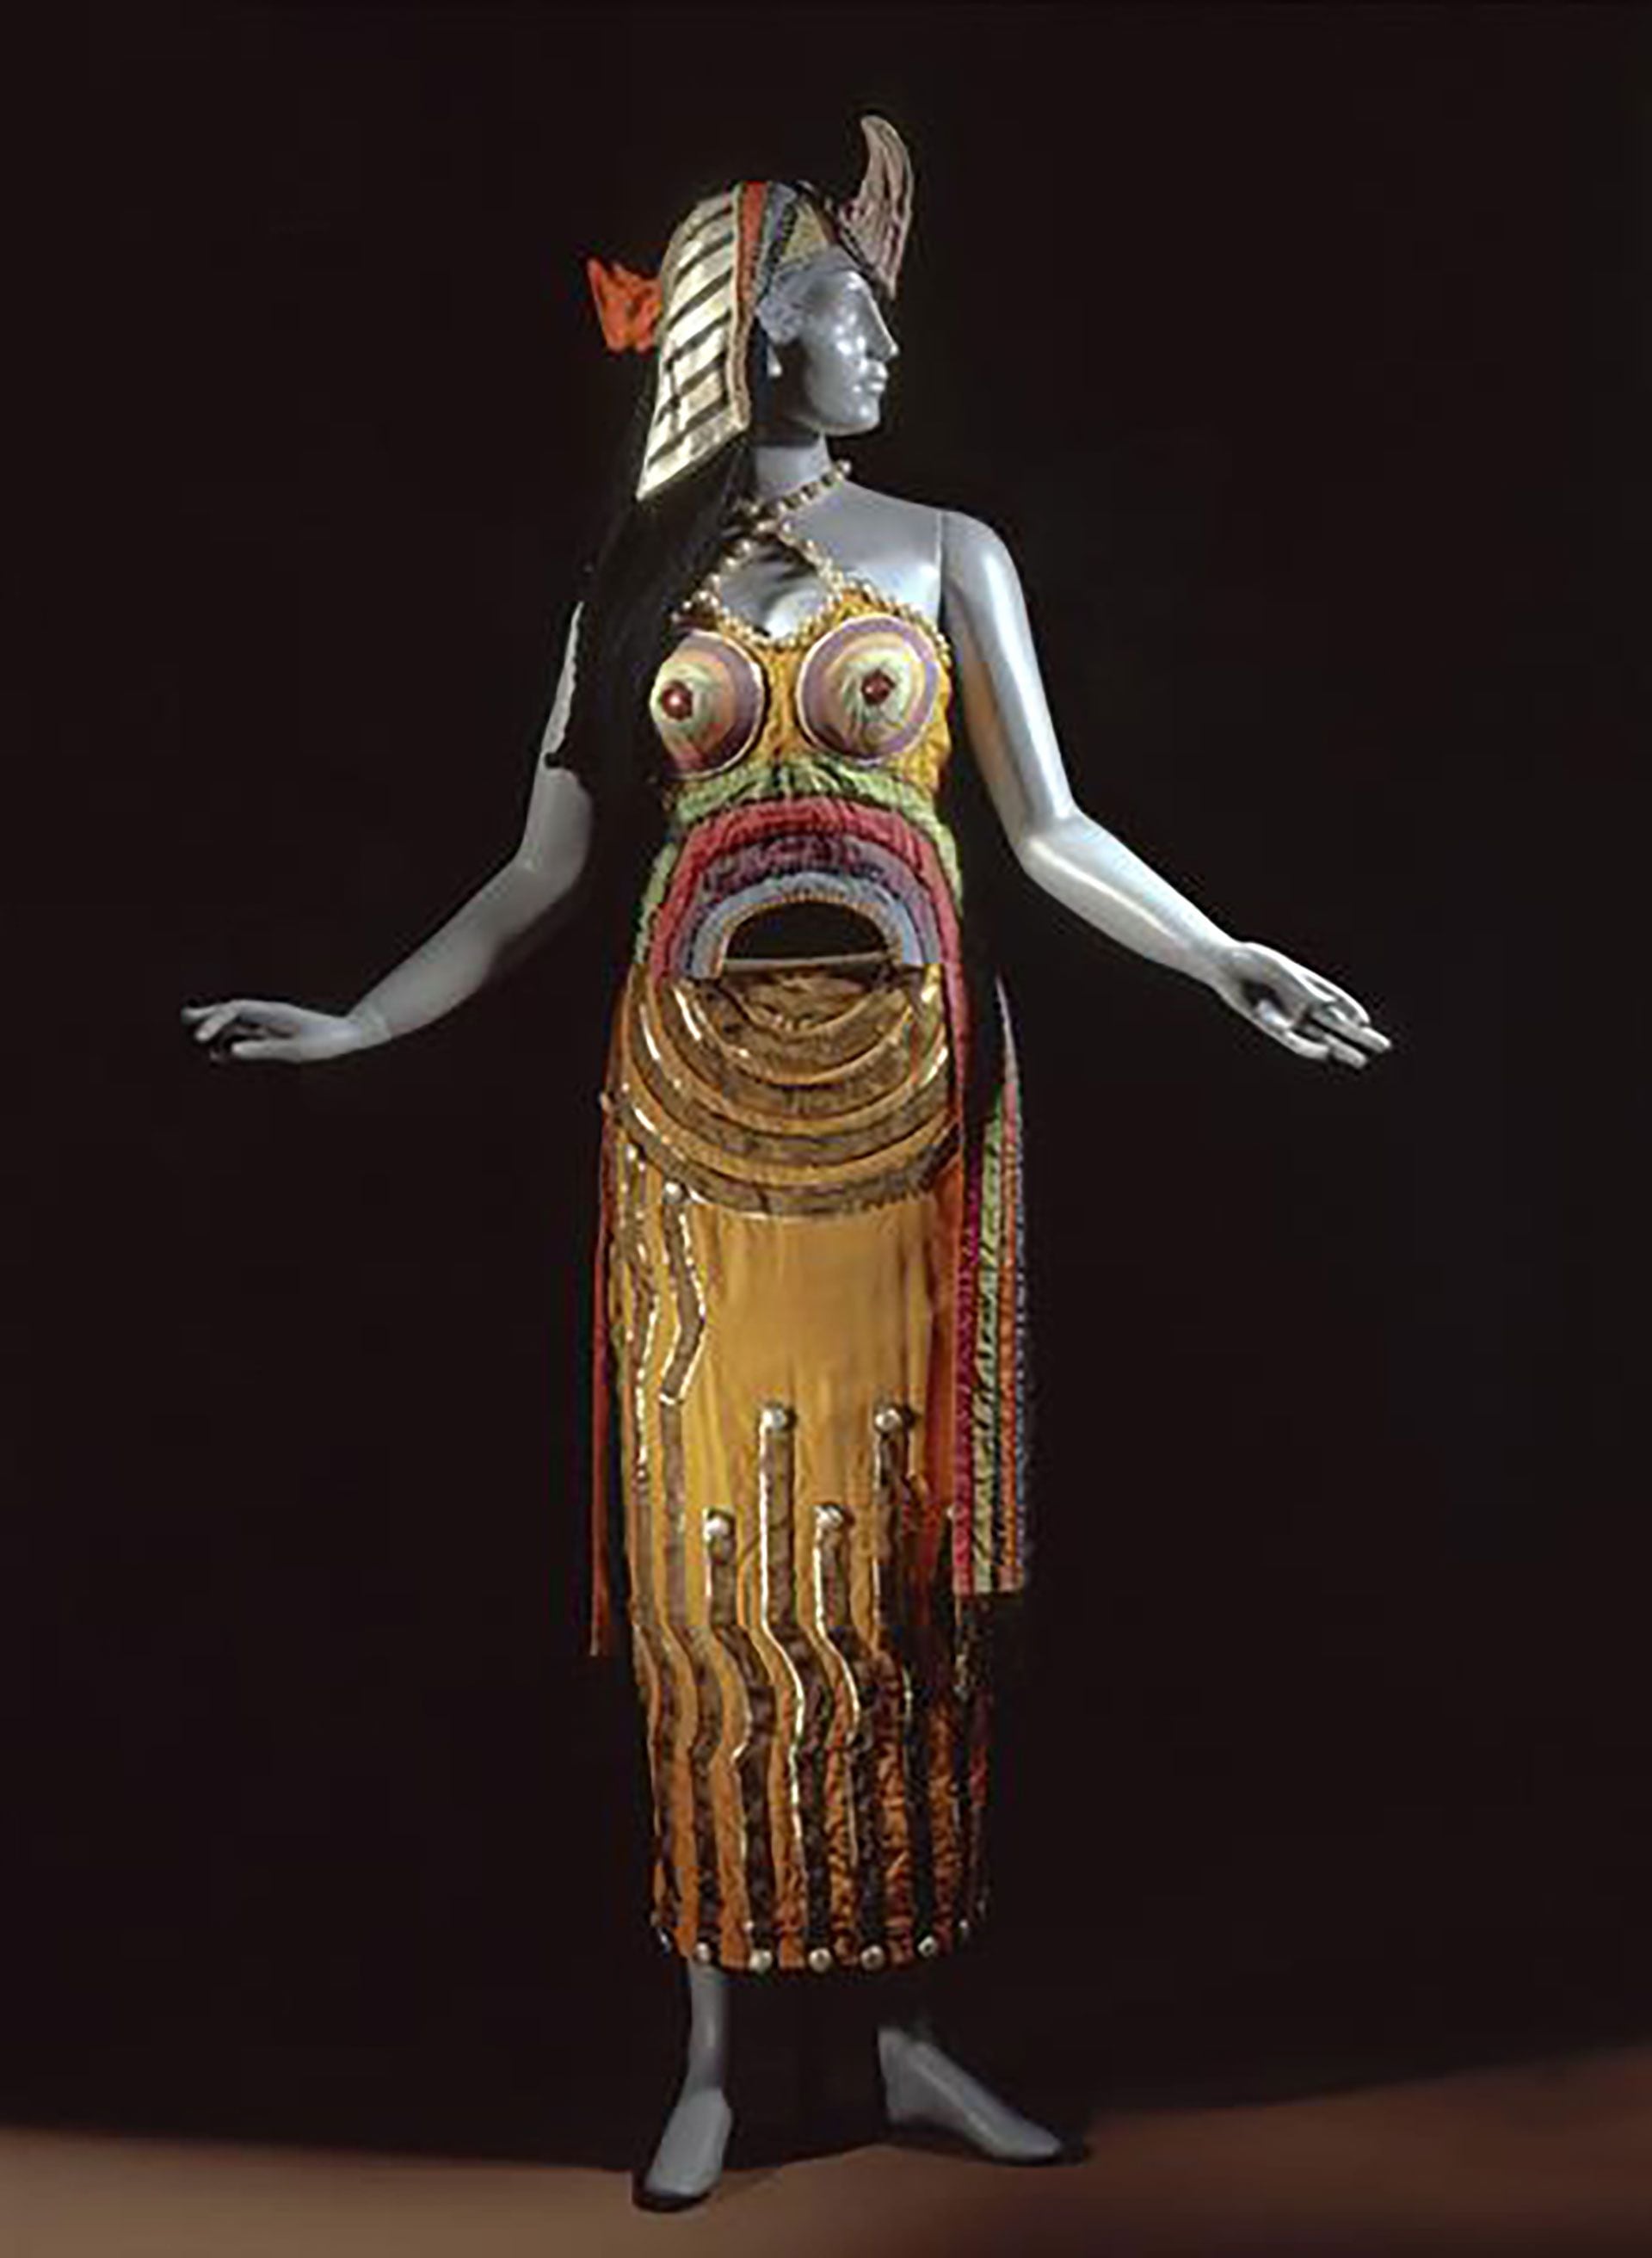 Diseño de Sonia Delaunay para la obra "Cleopatra" (1918)